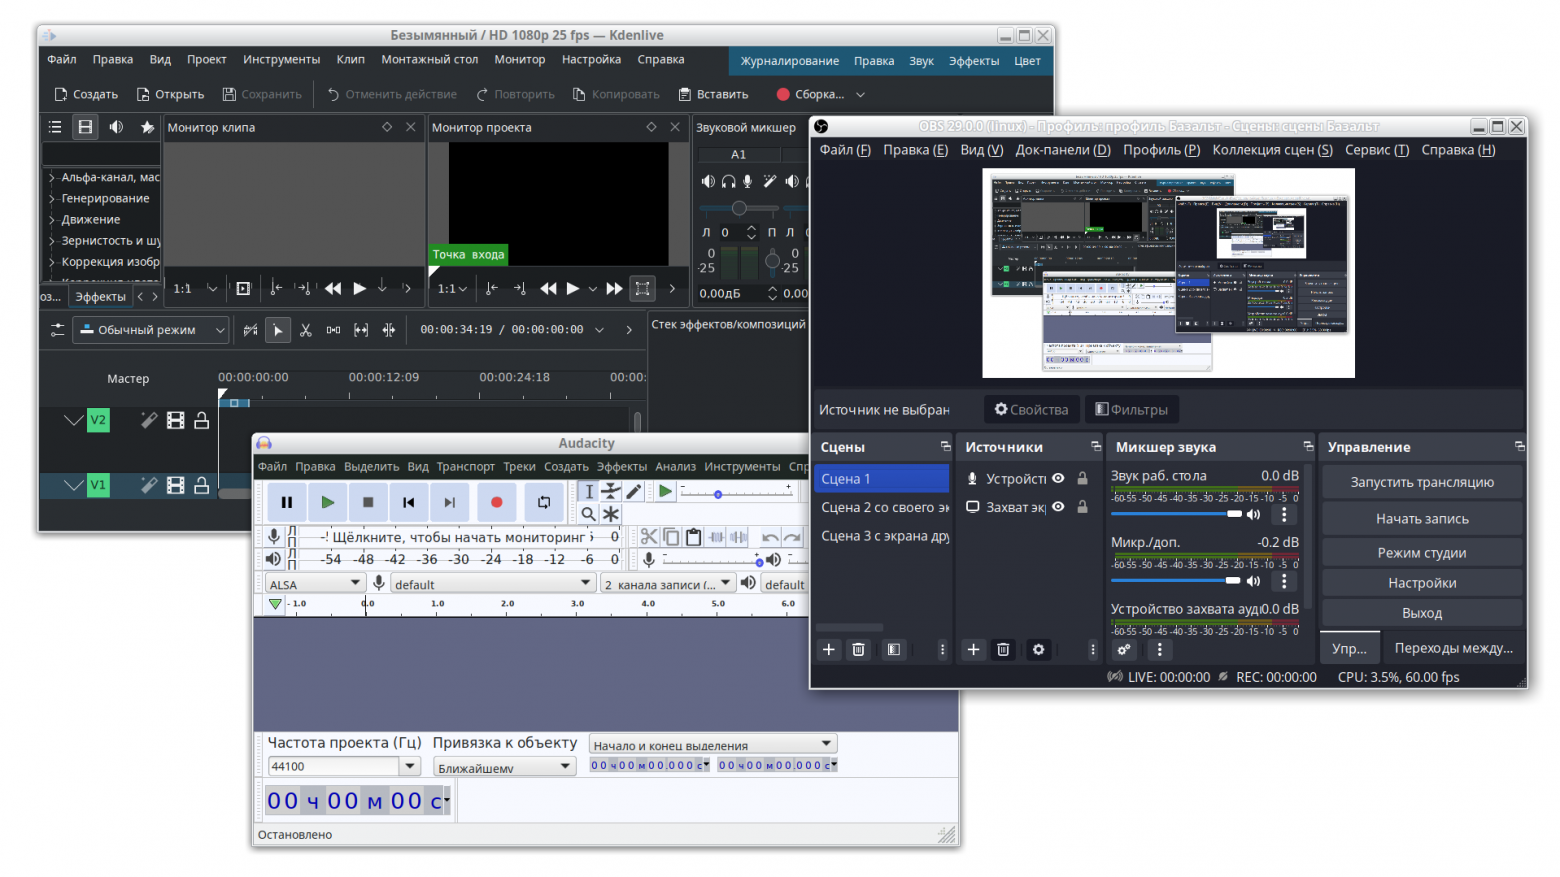 Набор инструментов для видеомонтажа: Kdeinlive, OBS Studio, Audacity